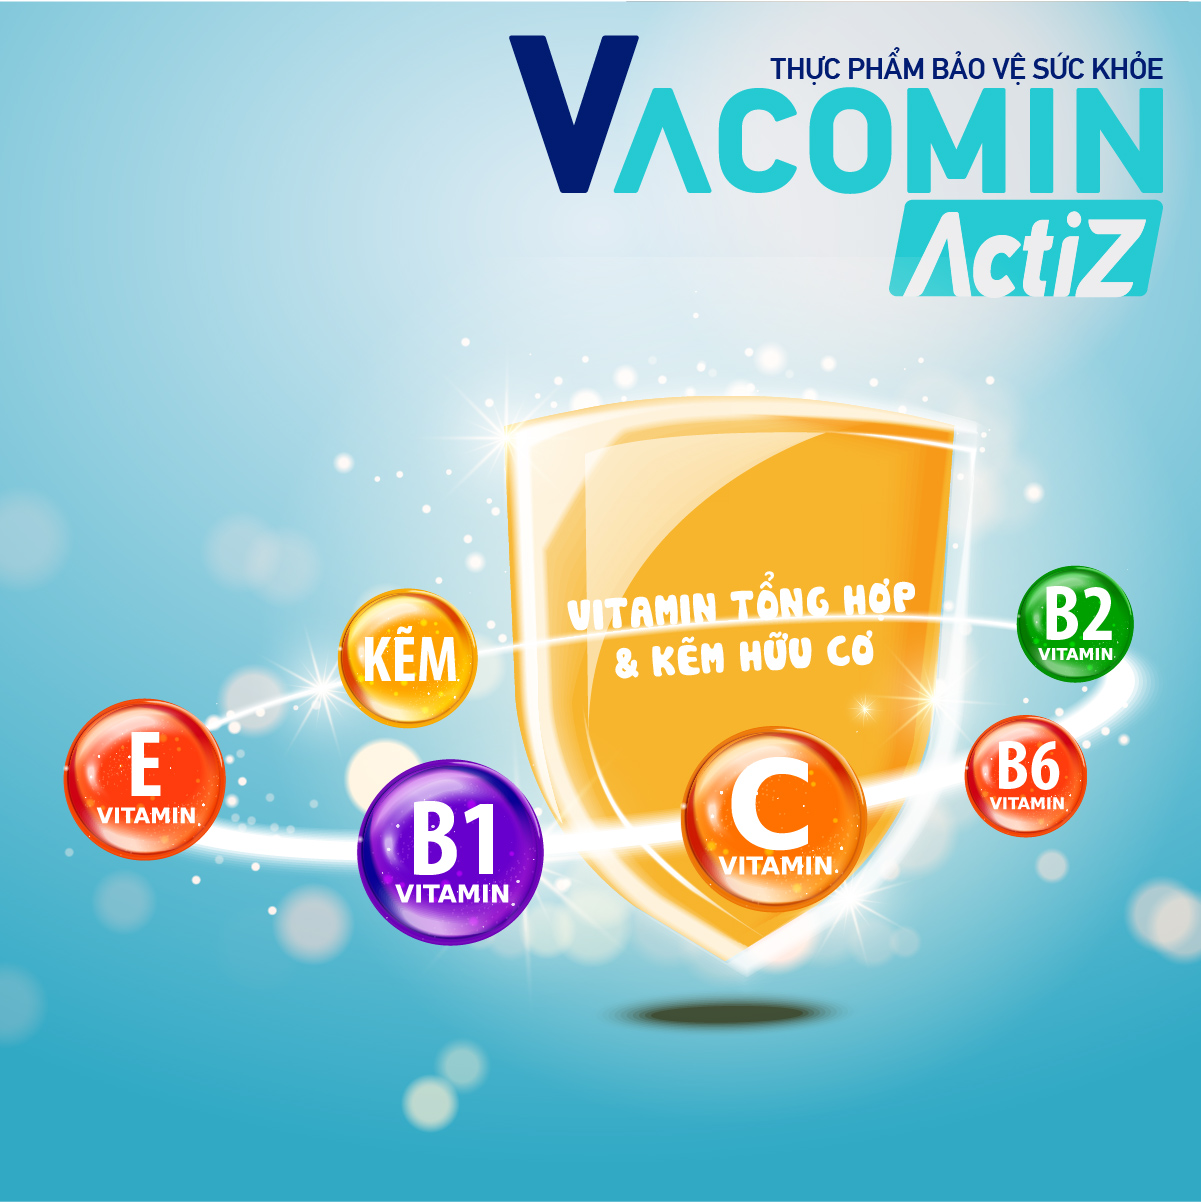 Thực Phẩm Bảo Vệ Sức Khỏe bổ sung vitamin tổng hợp, vitamin nhóm B, E, C và Kẽm hữu cơ Shinpoong Vacomin ActiZ - Hộp 120 viên